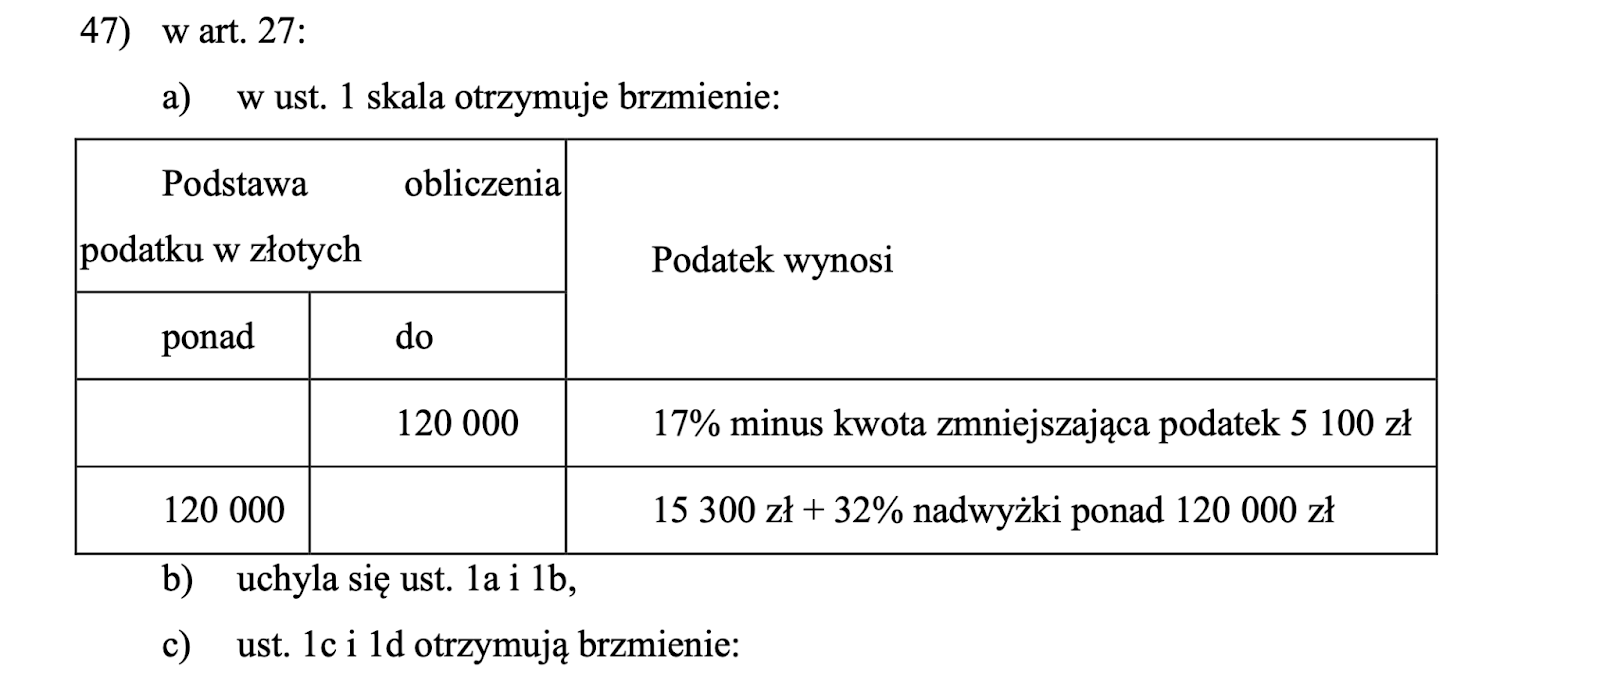 Polski Ład - zmiany składkowo-podatkowe od 2022 r.